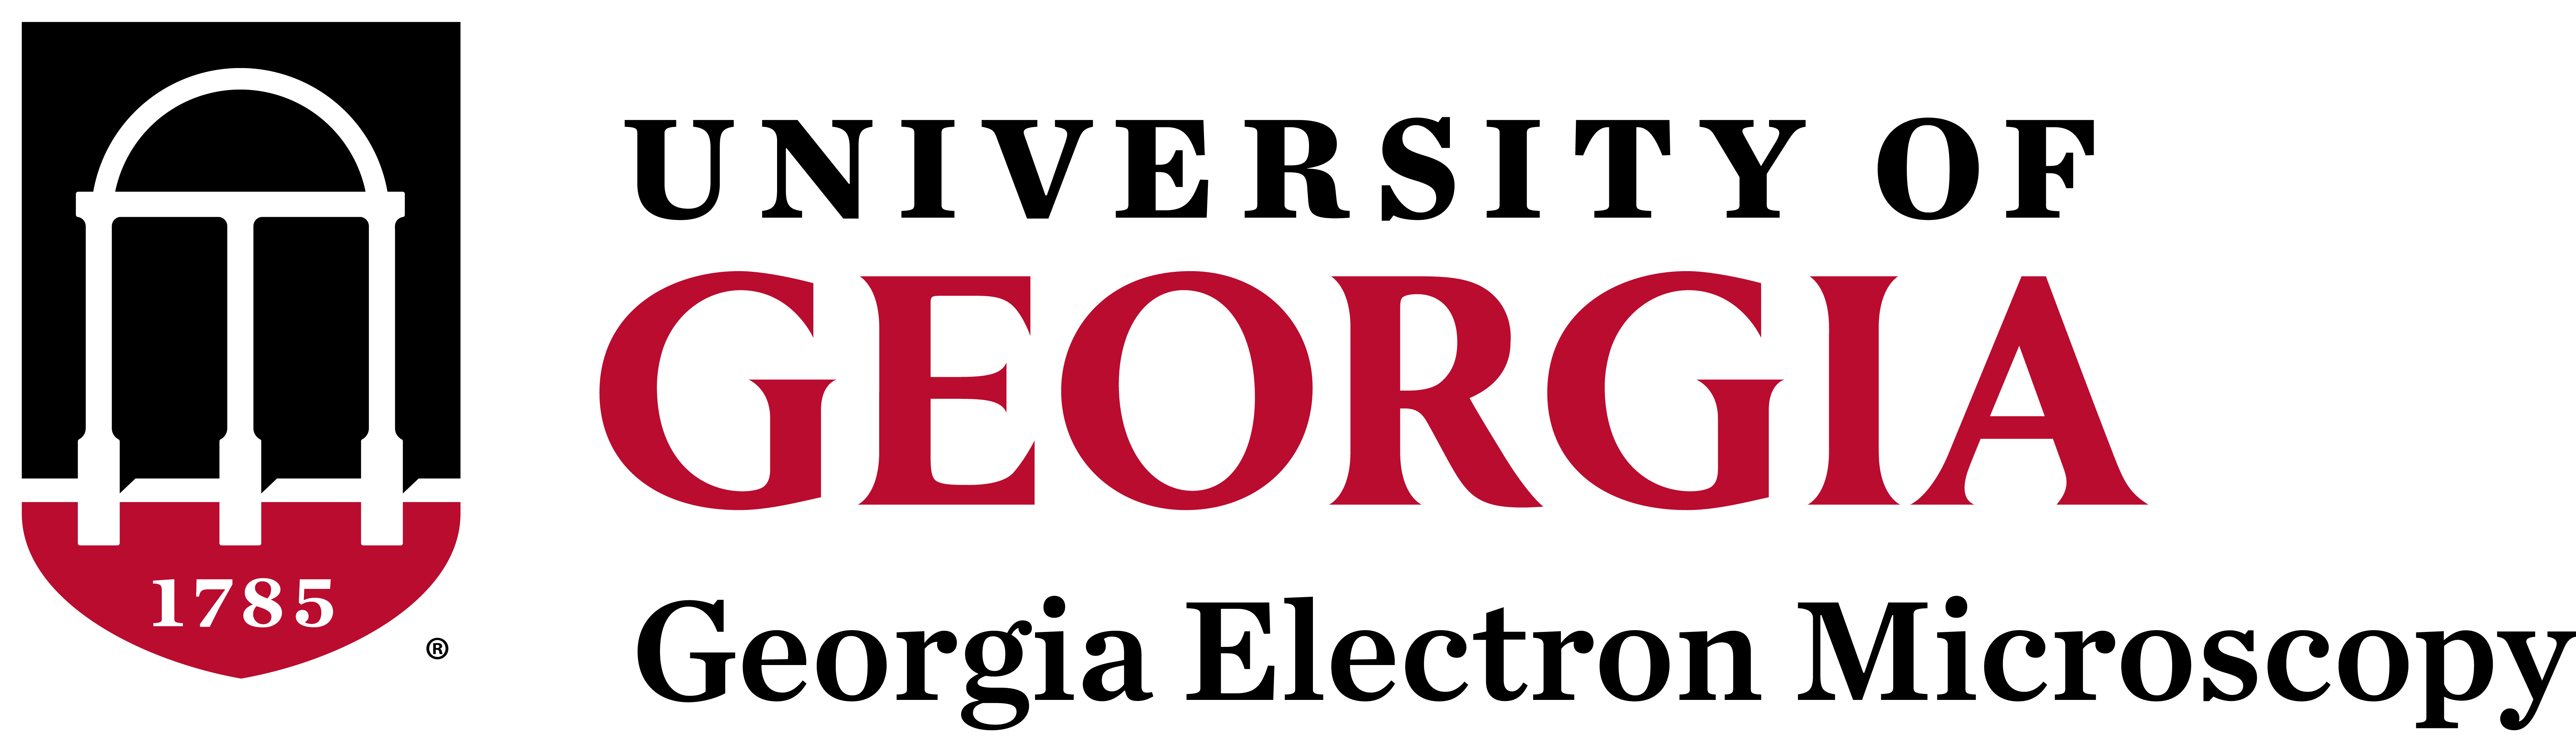 UGA Georgia Electron Microscopy Official Logo